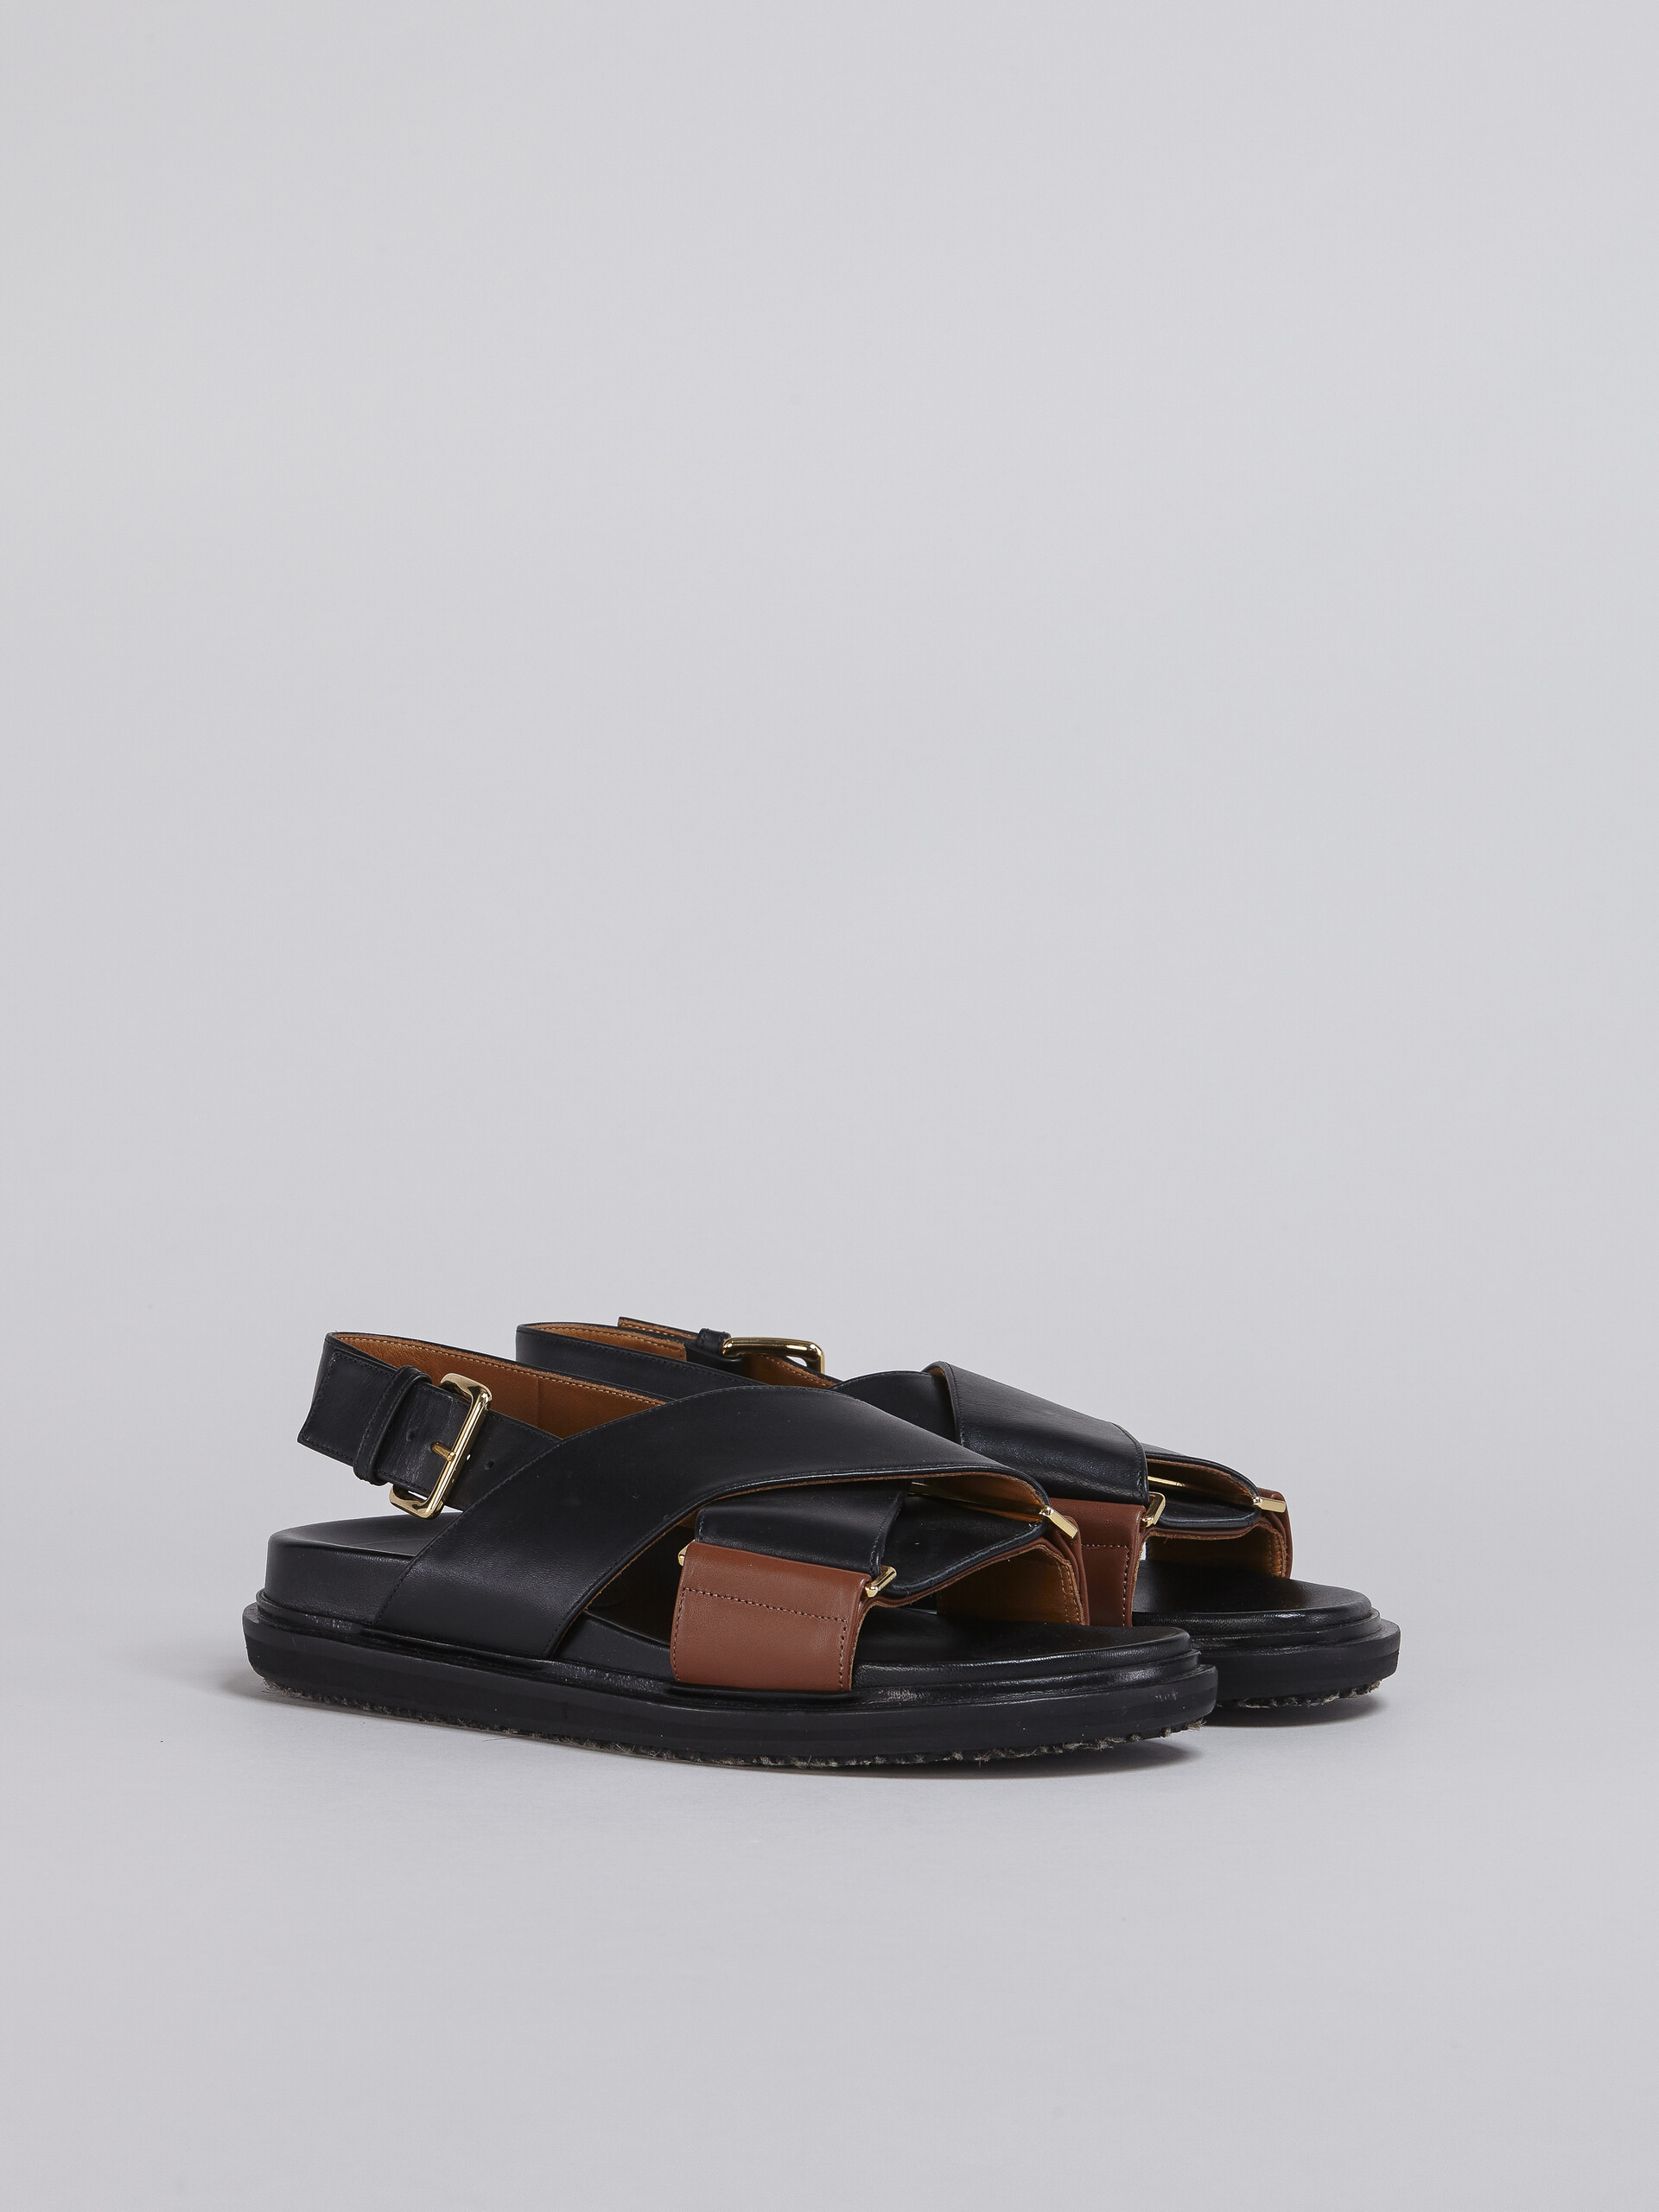 Sandales fussbett en cuir noir et marron - Sandales - Image 2